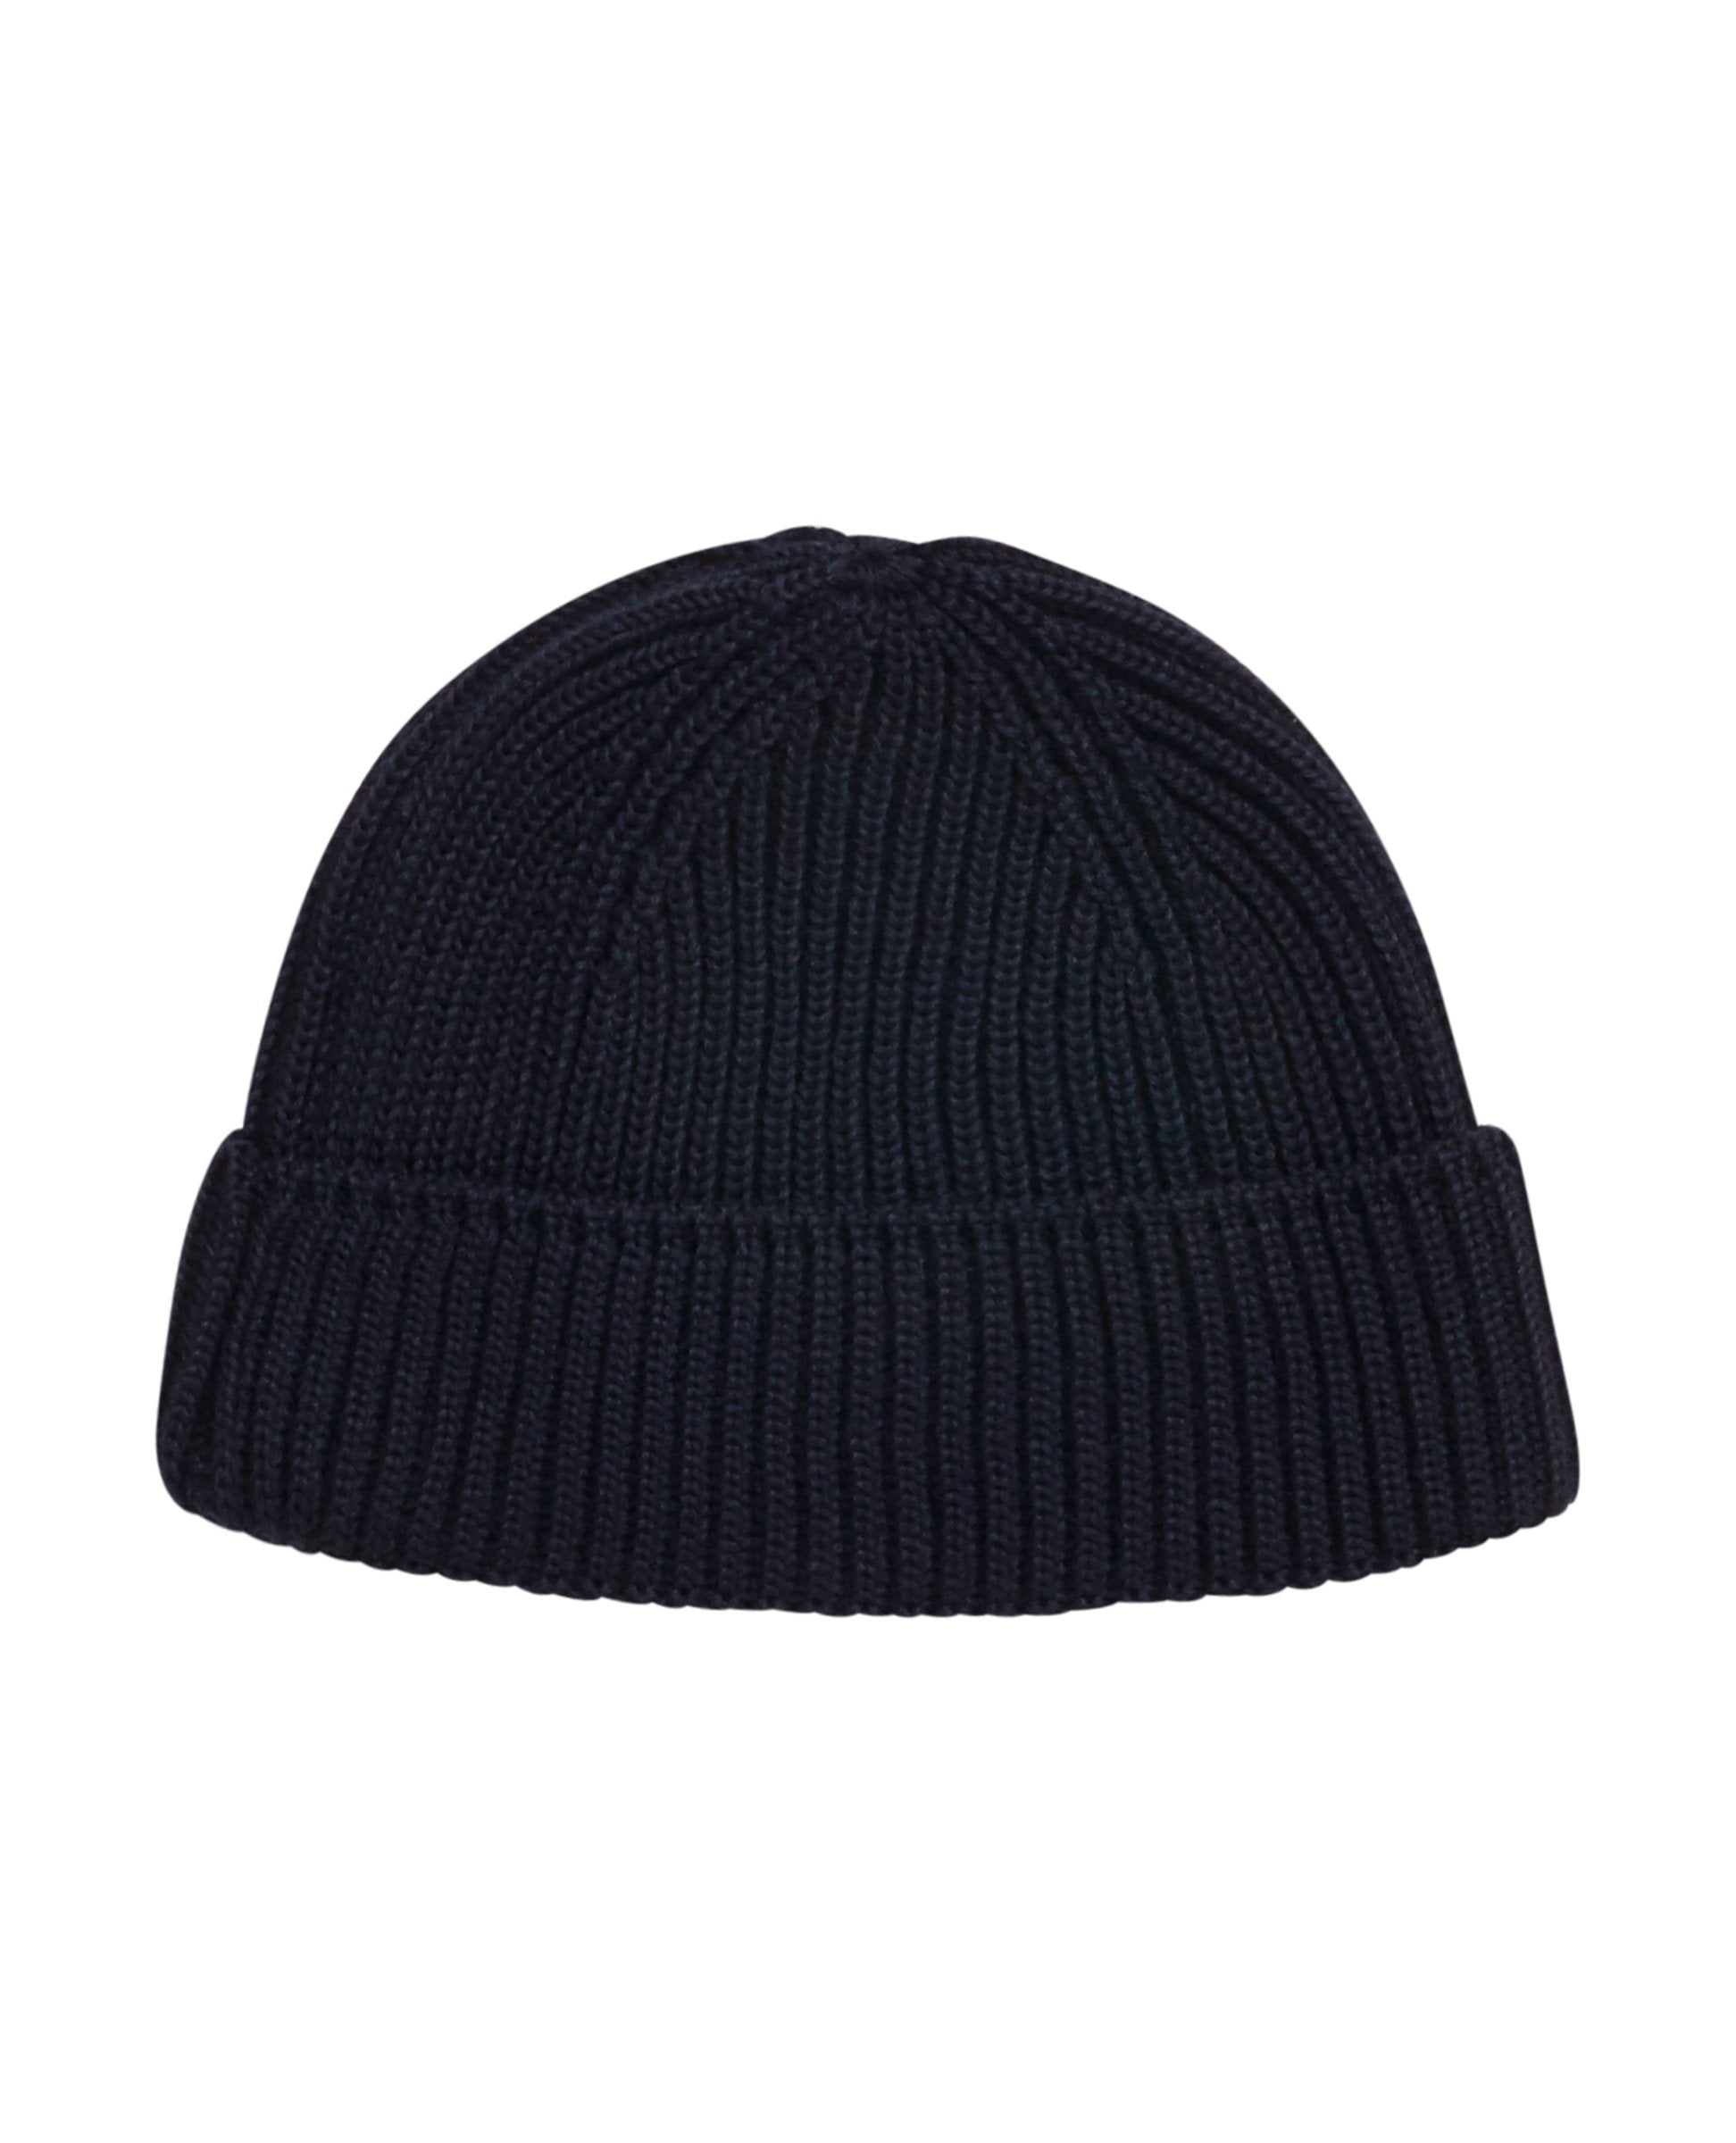 FENDER hat | navy blue [2] (M) – S. N. S. HERNING [ EUR ]